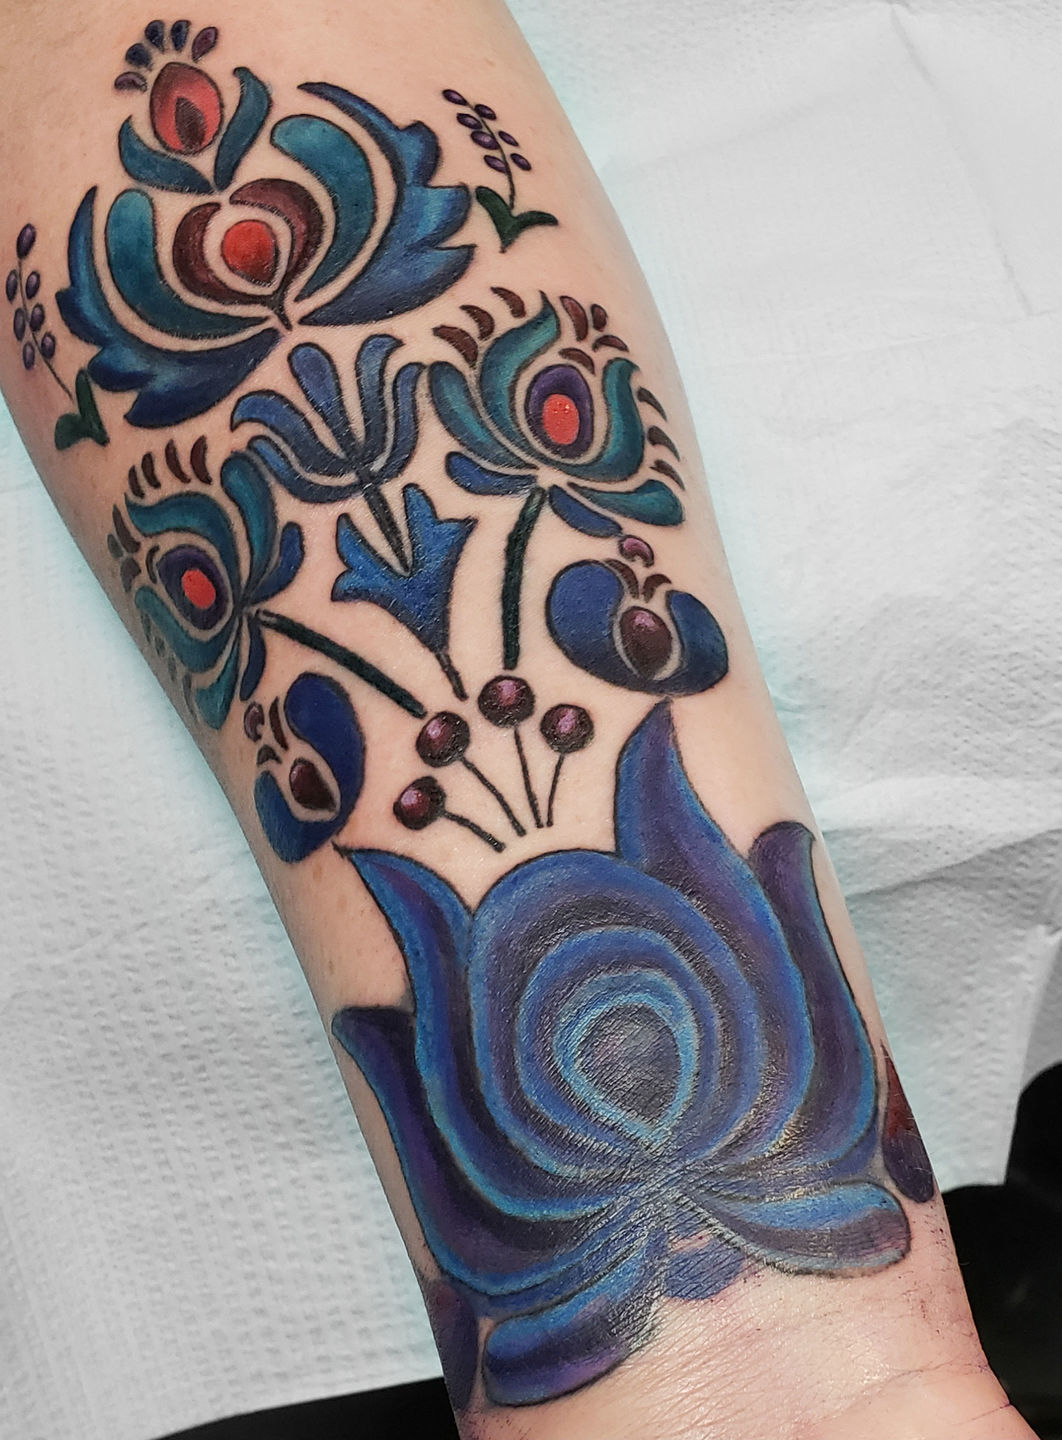 Tattoo uploaded by Xavier • Folk-art inspired birds tattoo by Winston  Whale. #WinstonWhale #winstonthewhale #folk #folkart #contemporary #trippy  #bird • Tattoodo